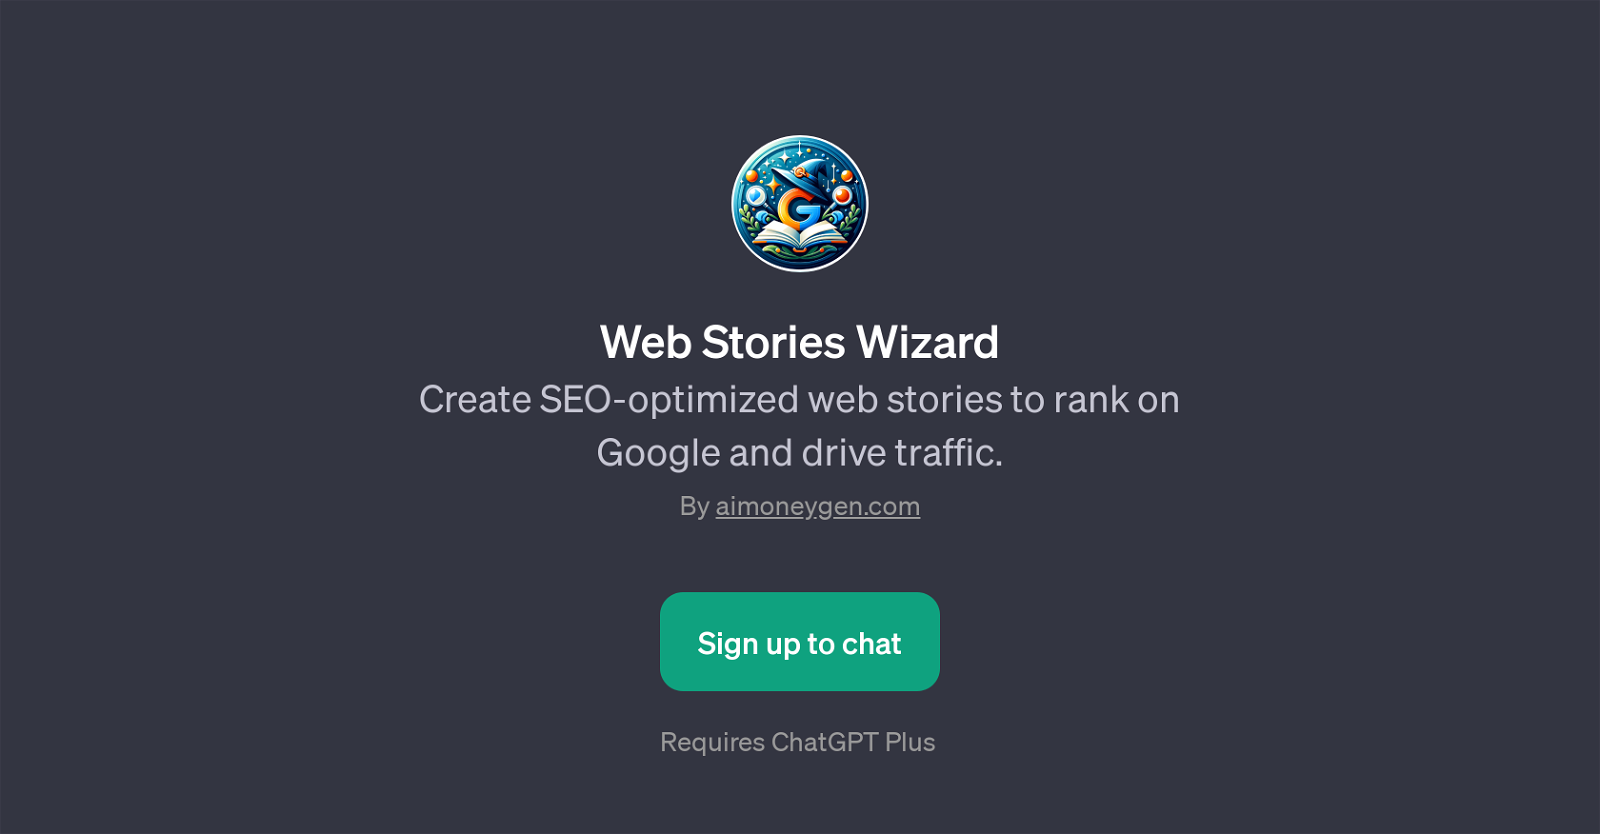 Web Stories Wizard website